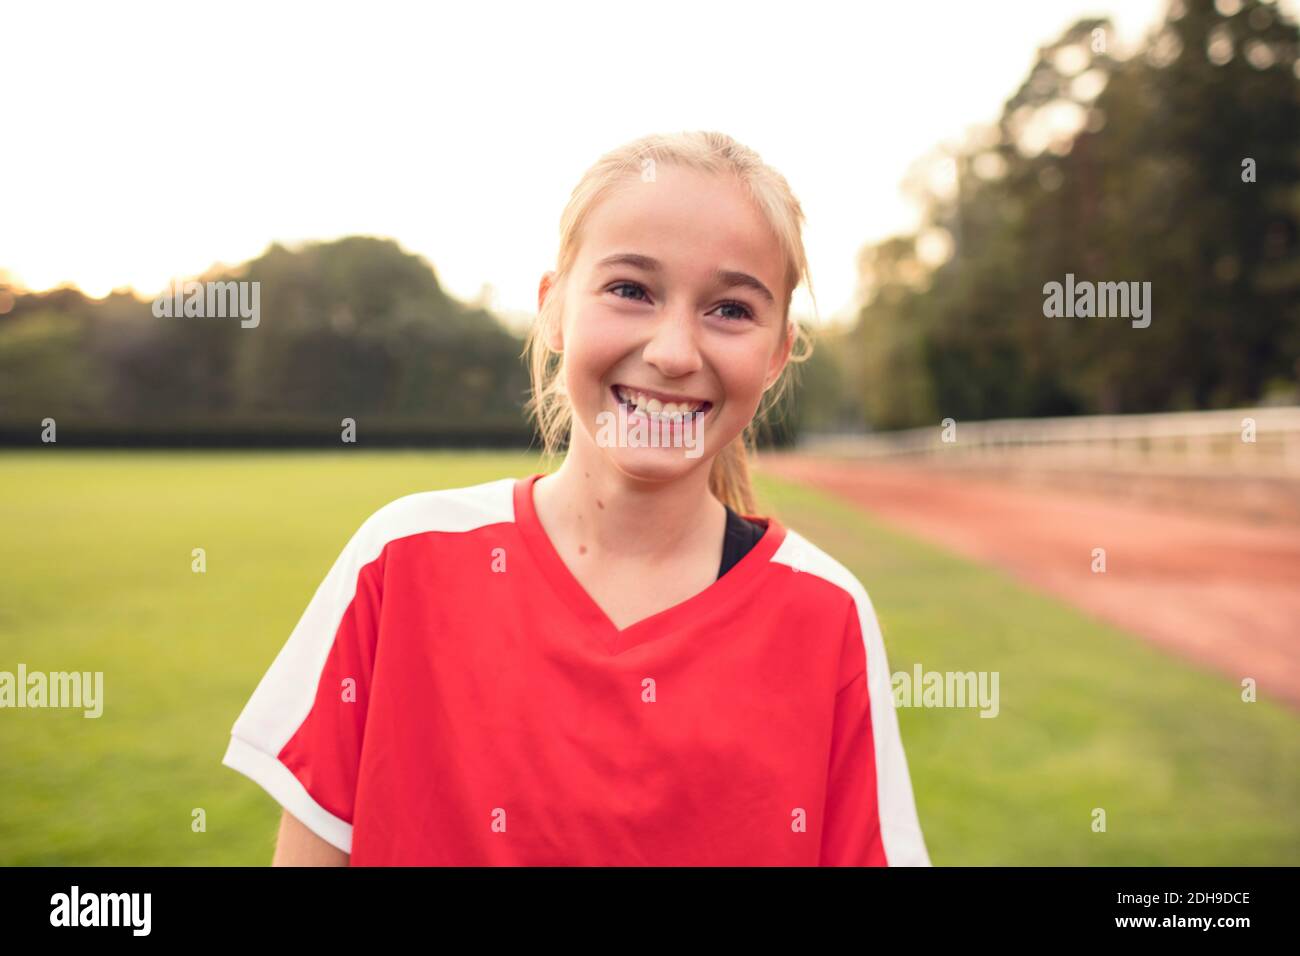 Ragazza felice che indossa uniforme sportiva rossa in piedi sul campo di calcio contro il cielo Foto Stock